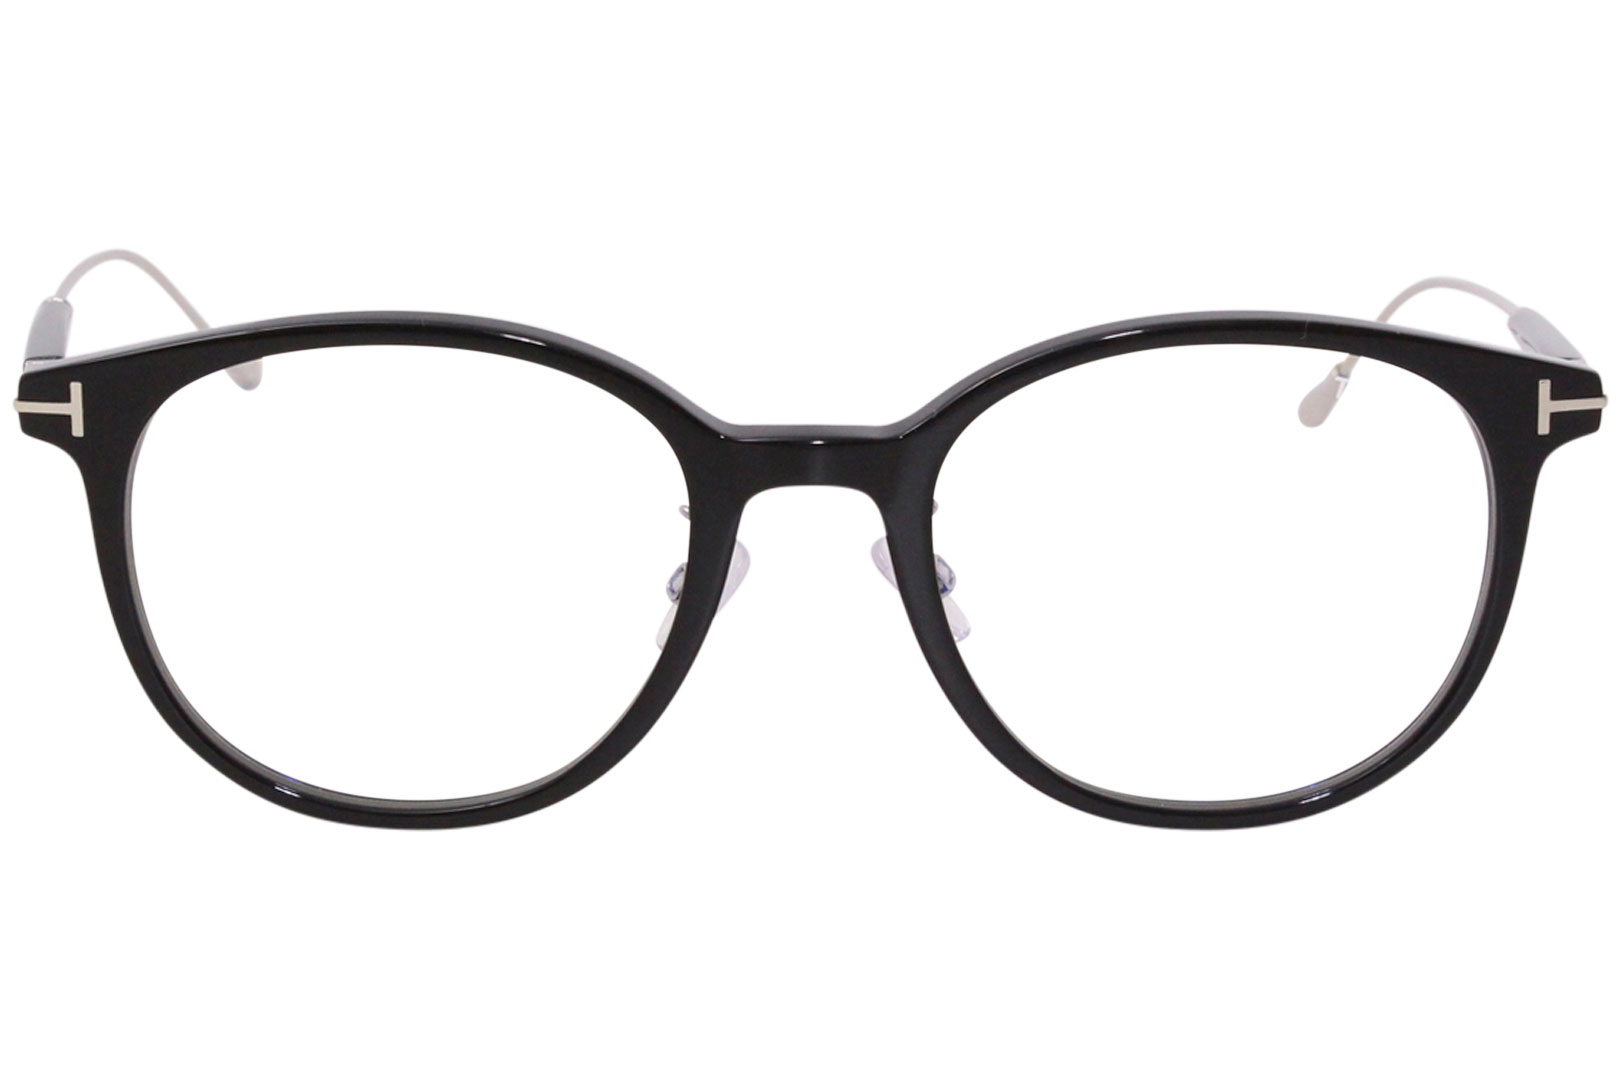 Tom Ford TF5644-D-B 001 Eyeglasses Men's Black/Palladium Full Rim Optical  Frame 